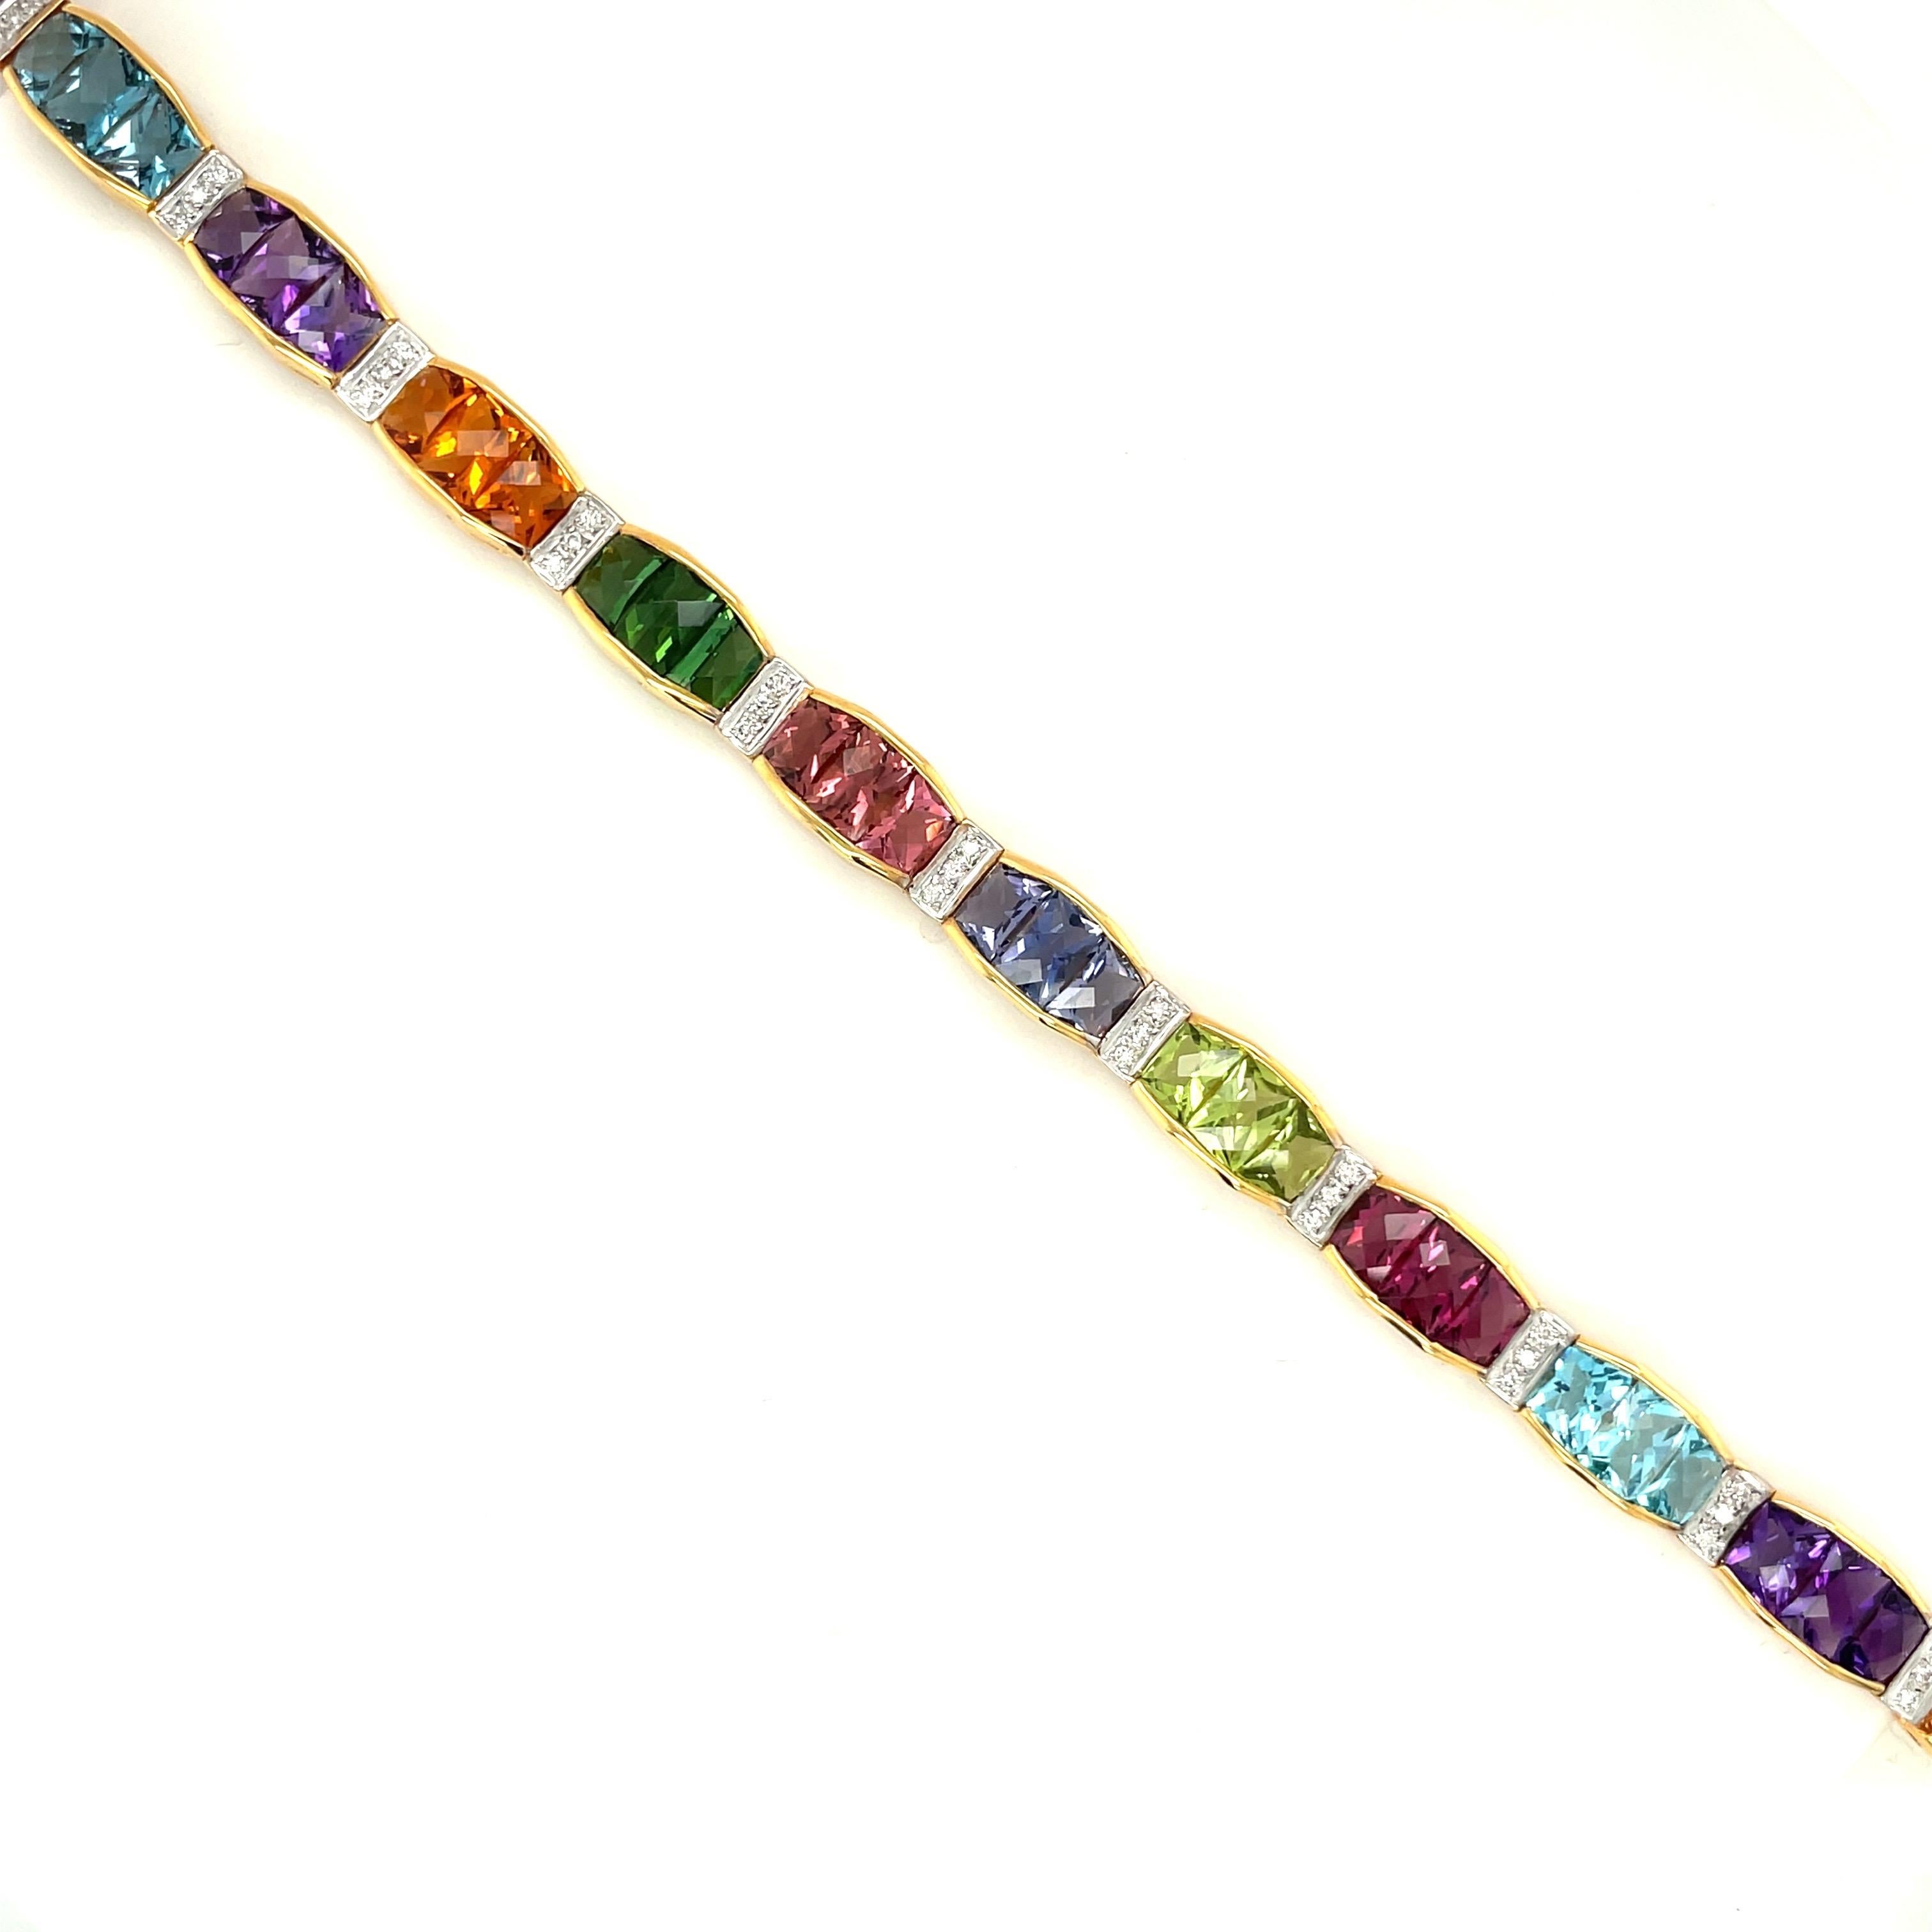 Dieses farbenfrohe Armband aus 18 Karat Gelbgold und Halbedelsteinen besteht aus 12 Teilen. Jeder Abschnitt ist mit 3 Steinen im Briolett-Schliff besetzt. Die Halbedelsteine sind Citrin, Granat, Blautopas, Iolith, Amethyst, rosa und grüner Turmalin